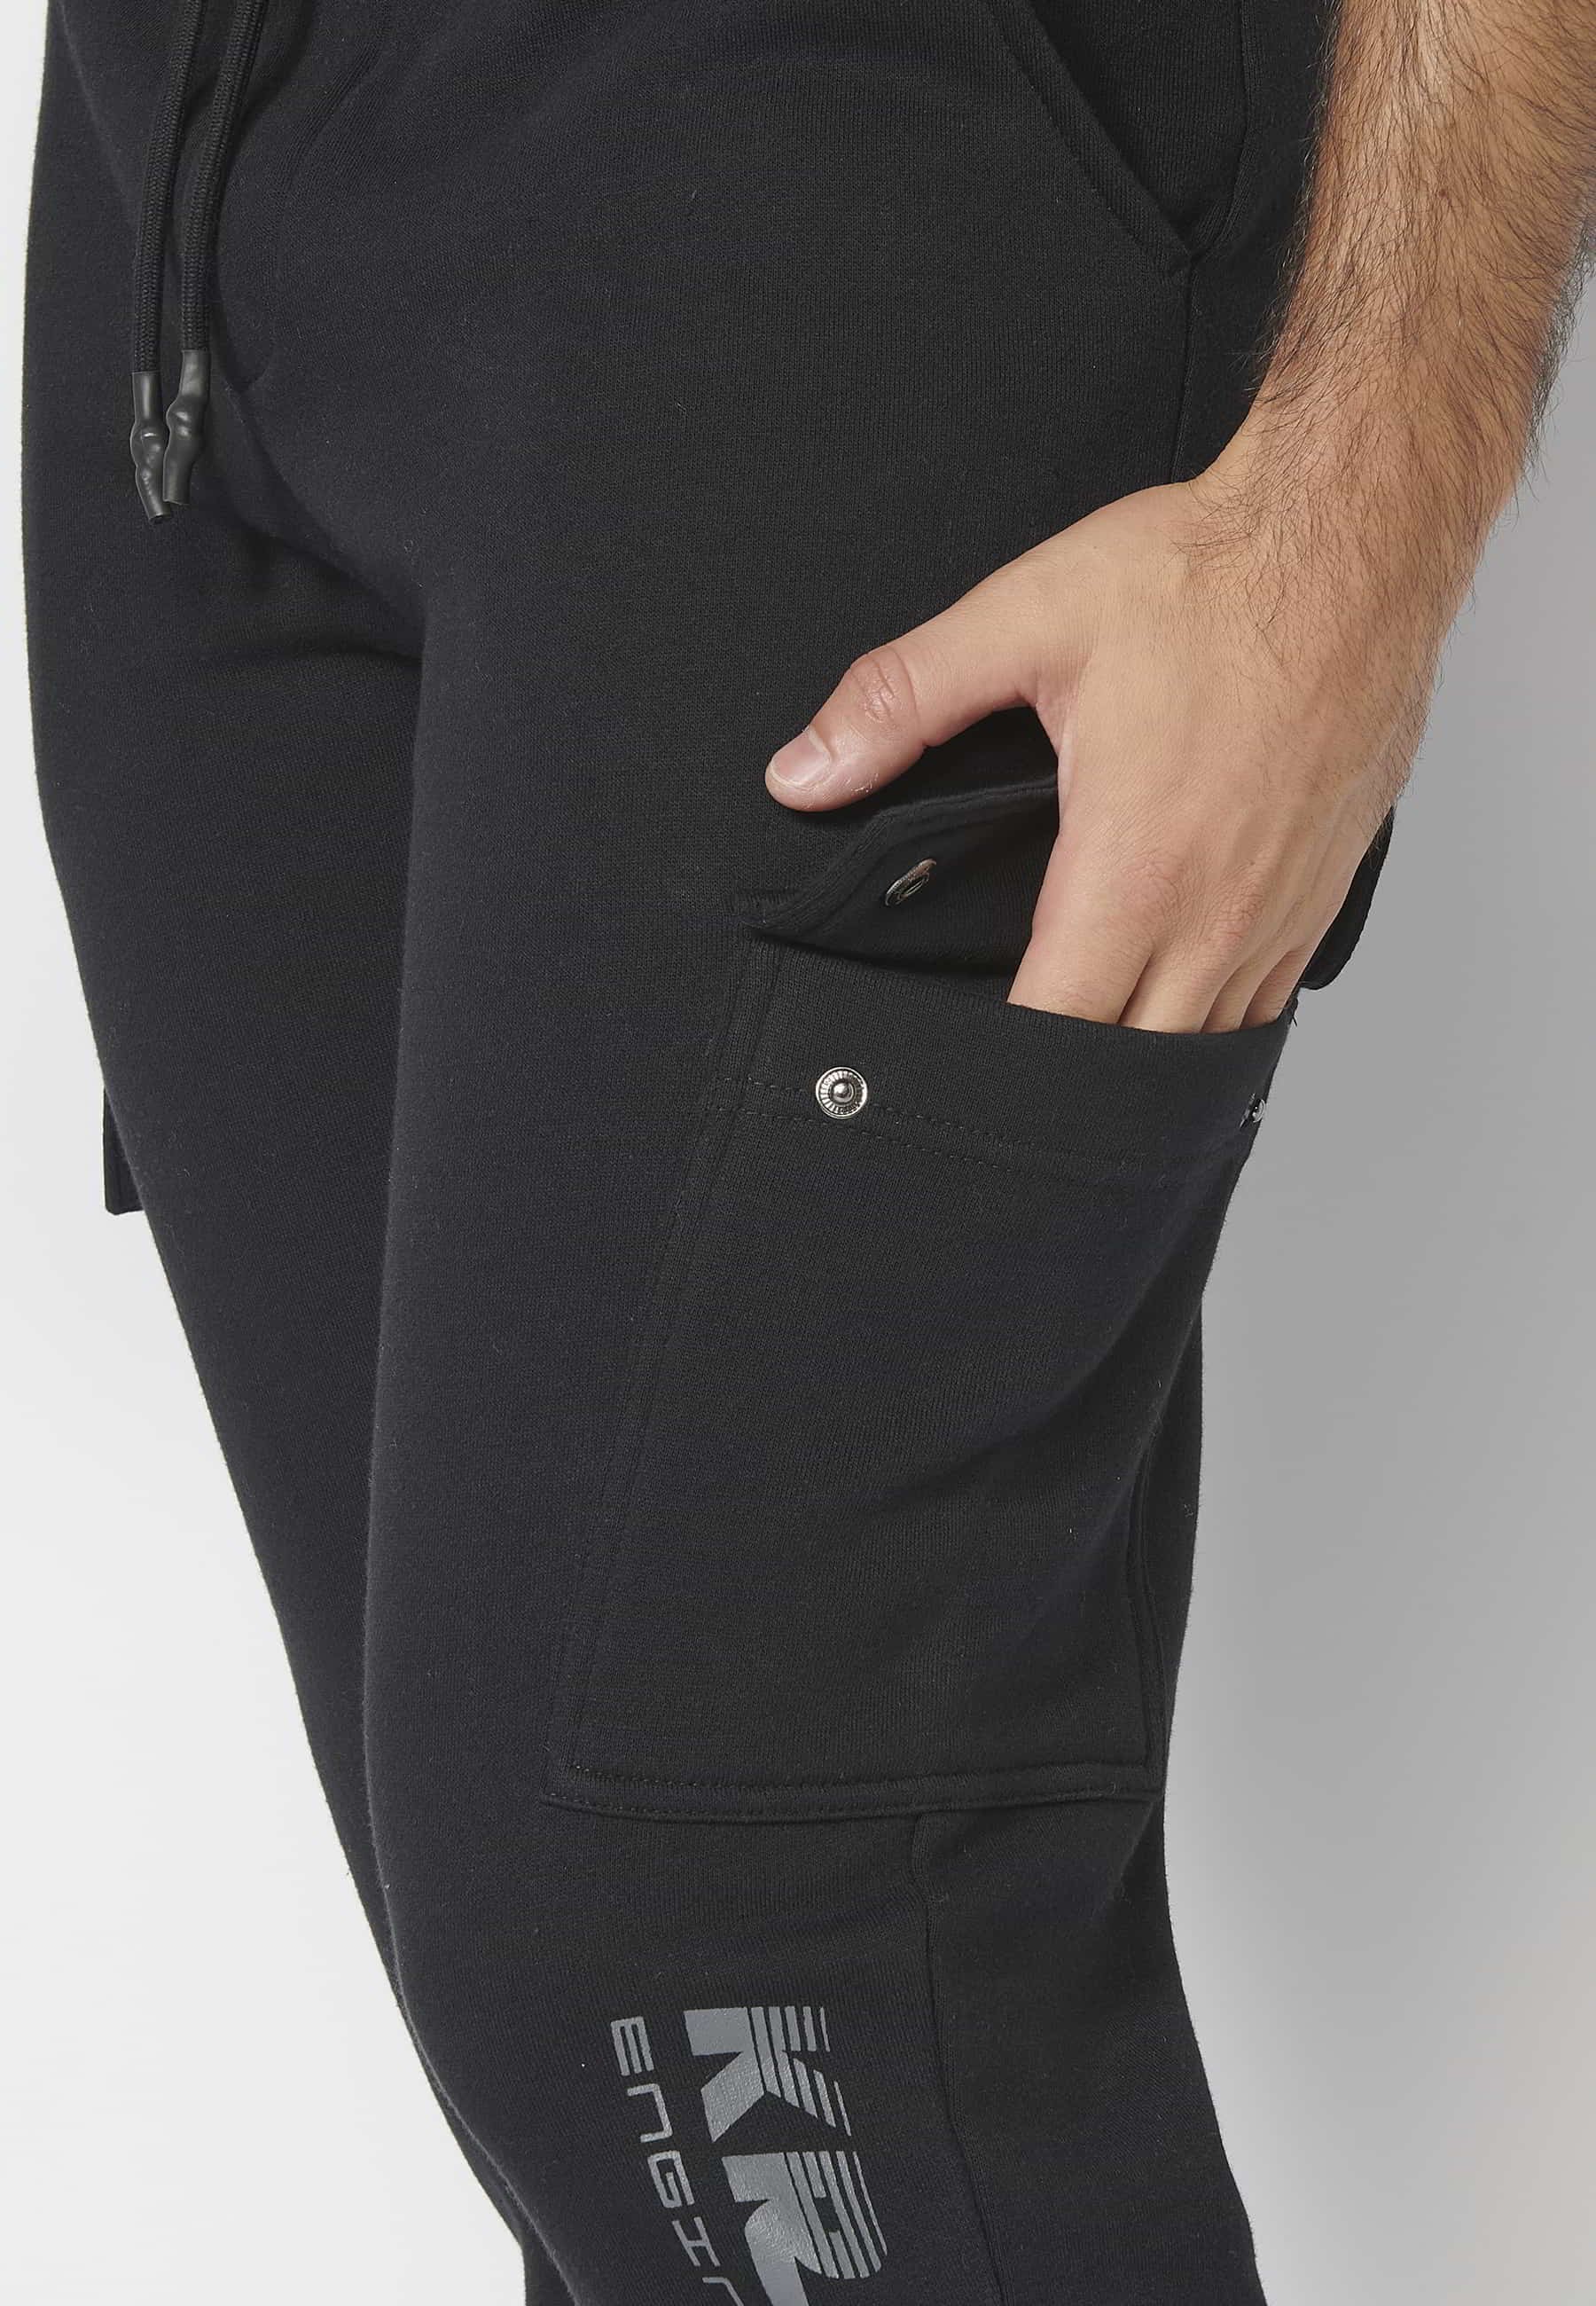 Pantalons llargs jogger amb cintura elàstica ajustable i butxaques laterals color Negre per a Home